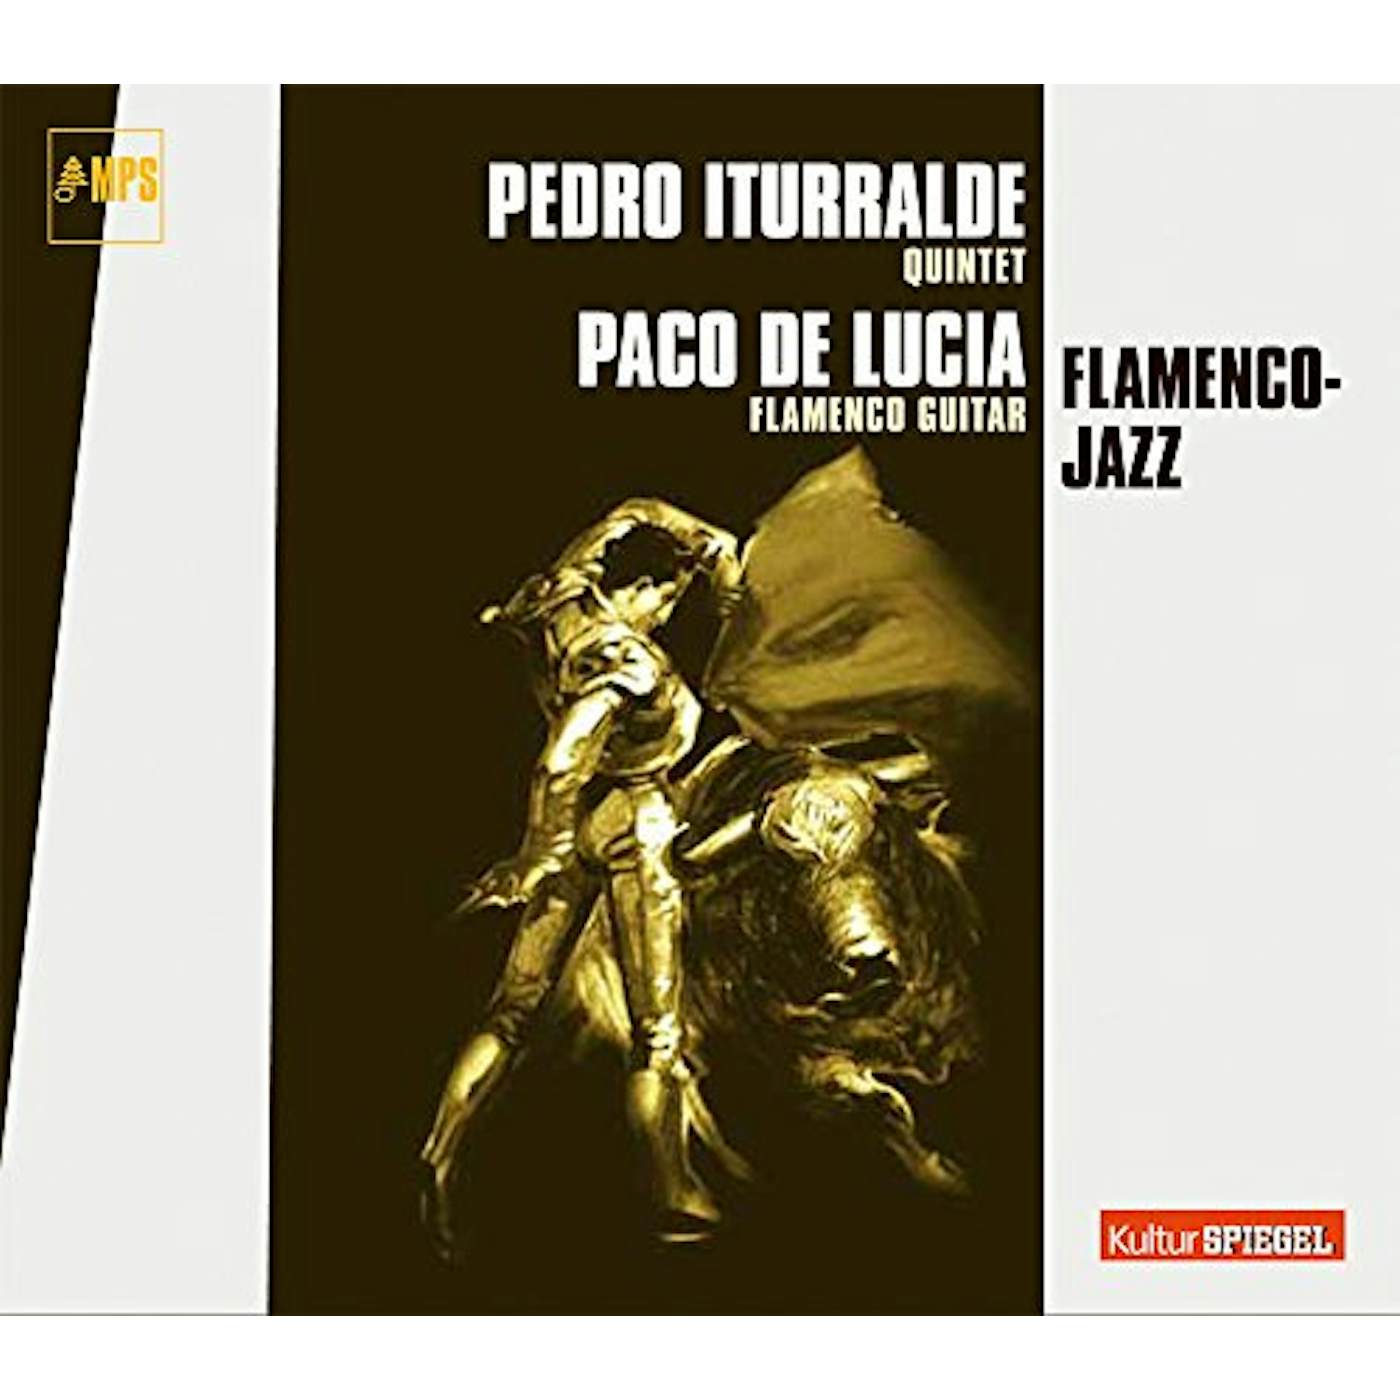 Pedro Iturralde FLAMENCO JAZZ CD